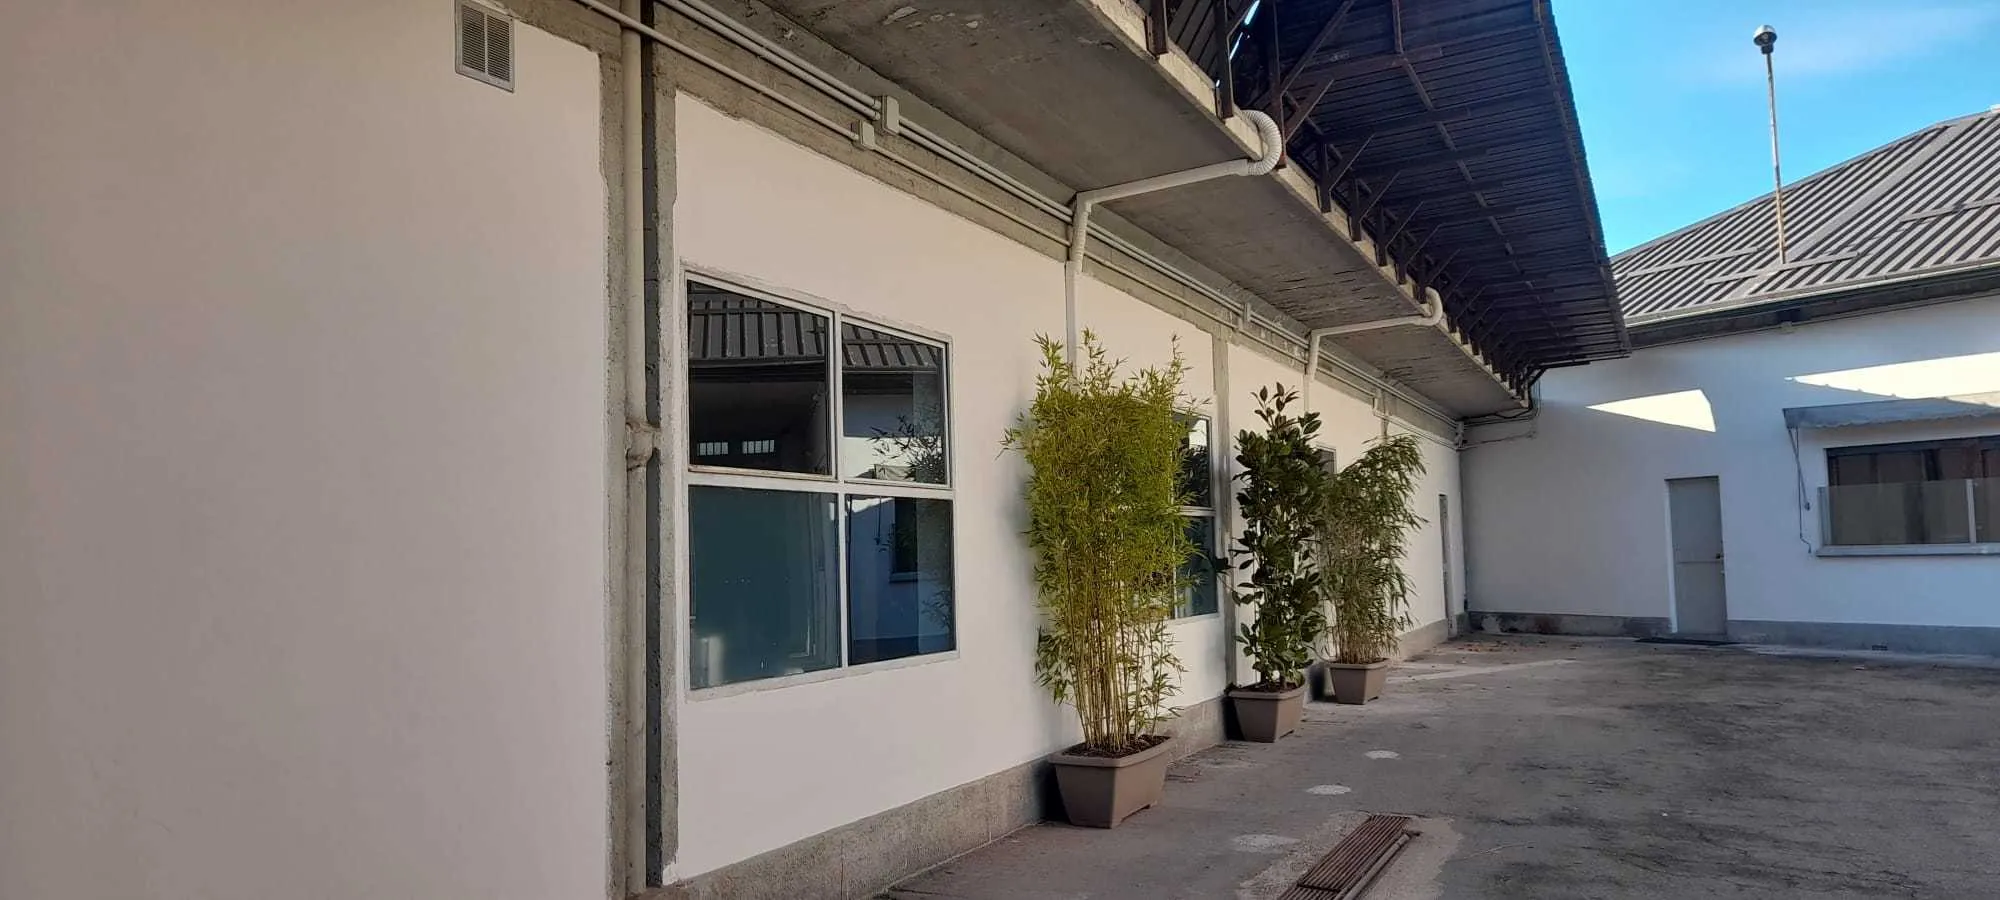 Immagine per Laboratorio in affitto a Torino corso Palermo 26